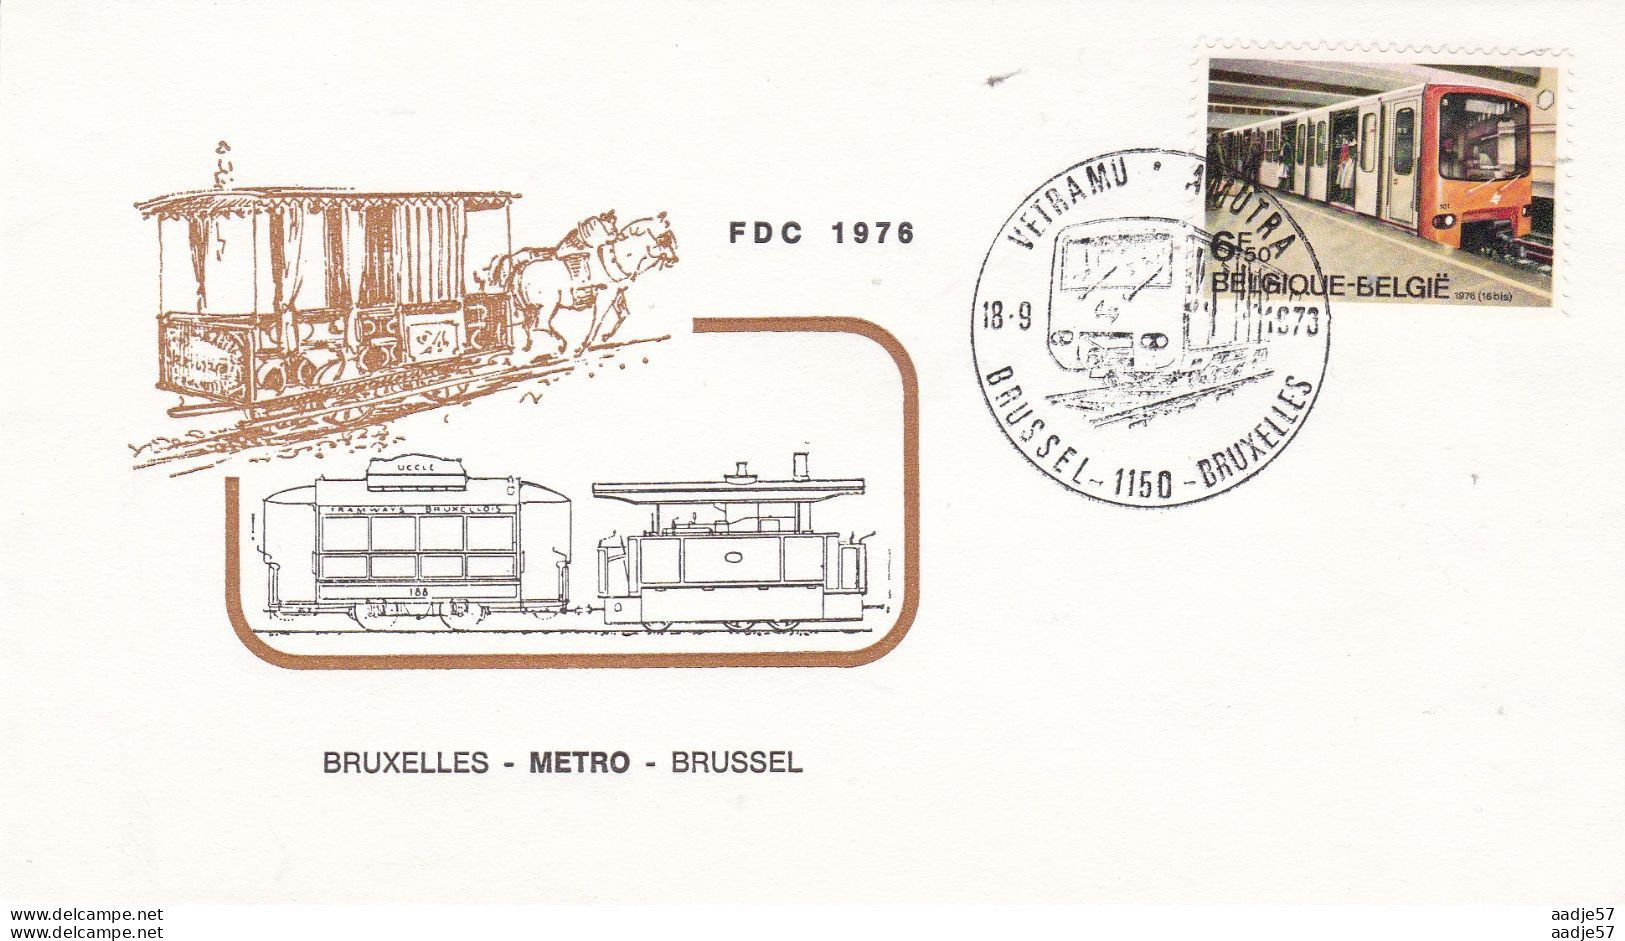 Belgie Belgique Belgium 1976 Metro Brussel - Tramways